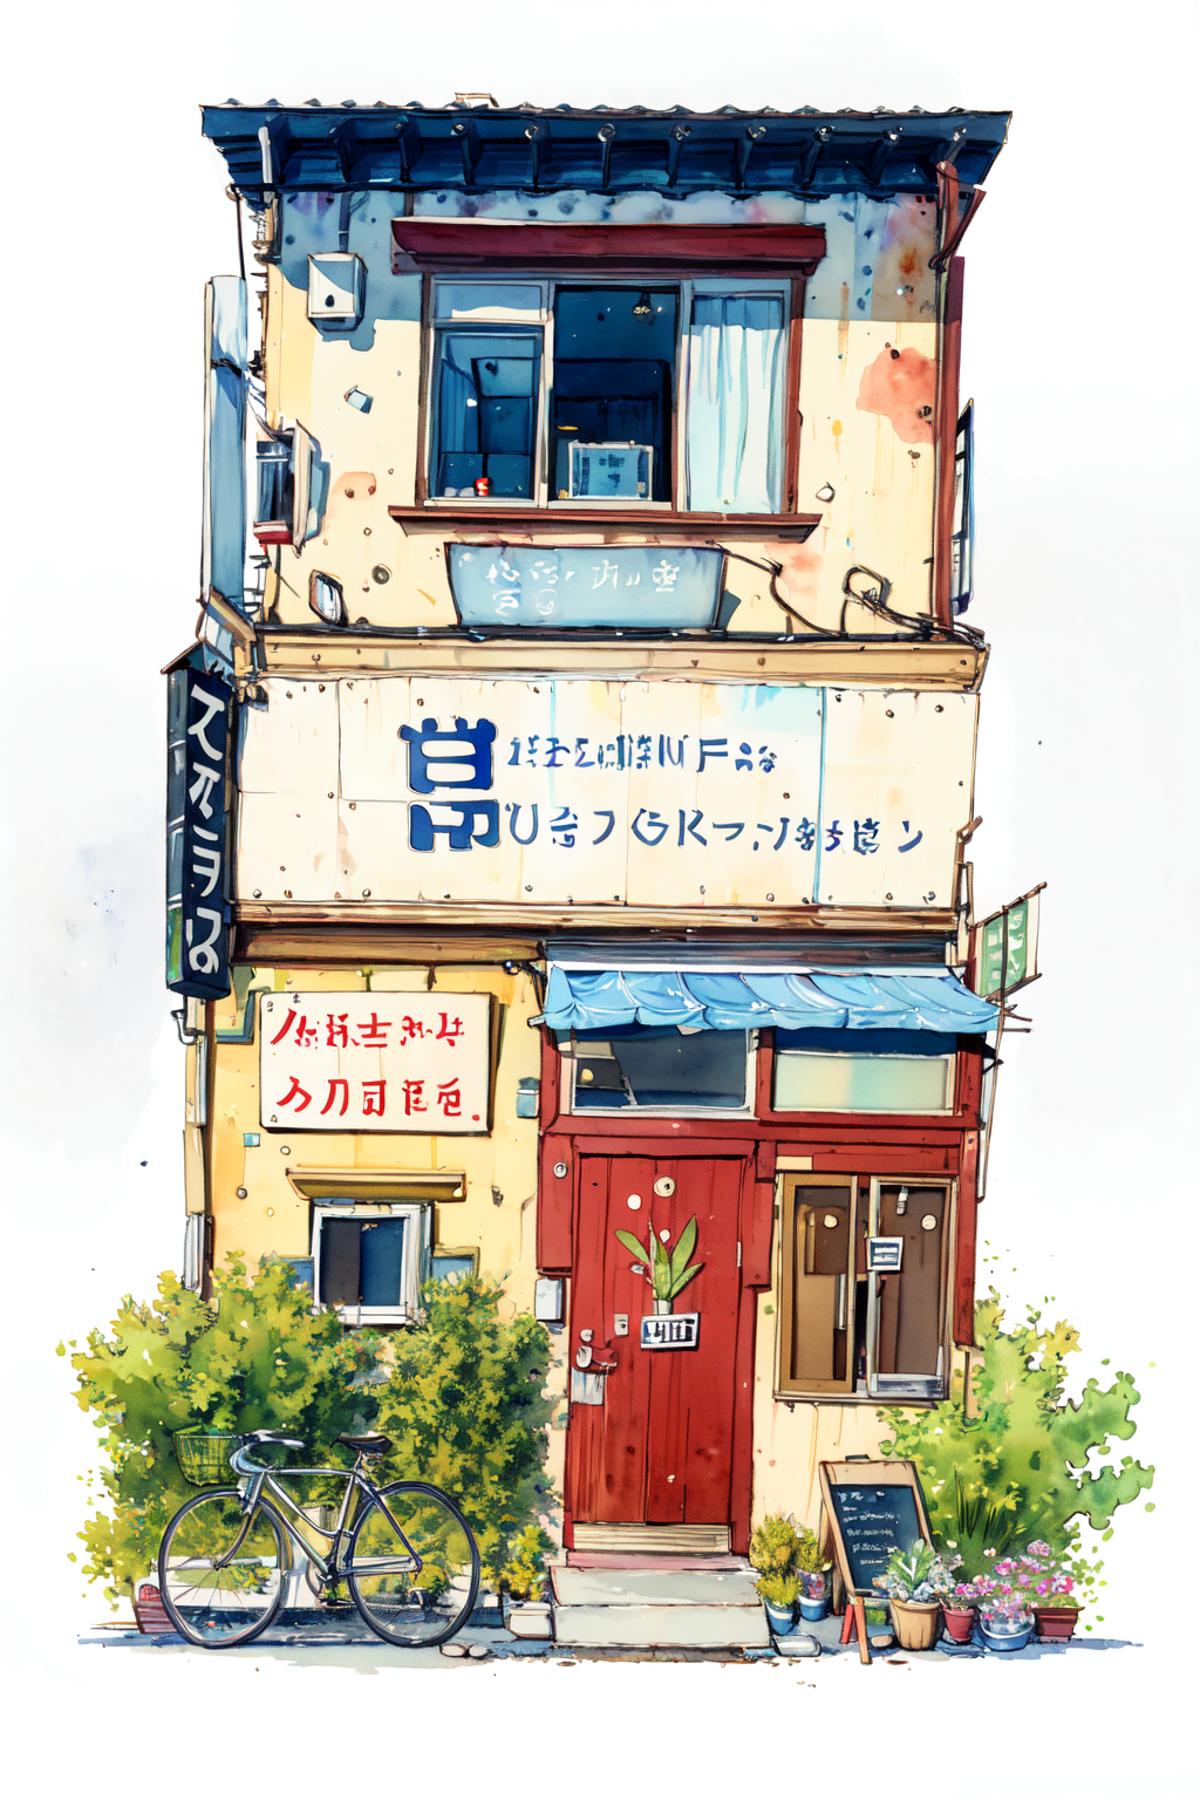 一隅/马克笔一户建/Architectural marker painting LORA image by chosen